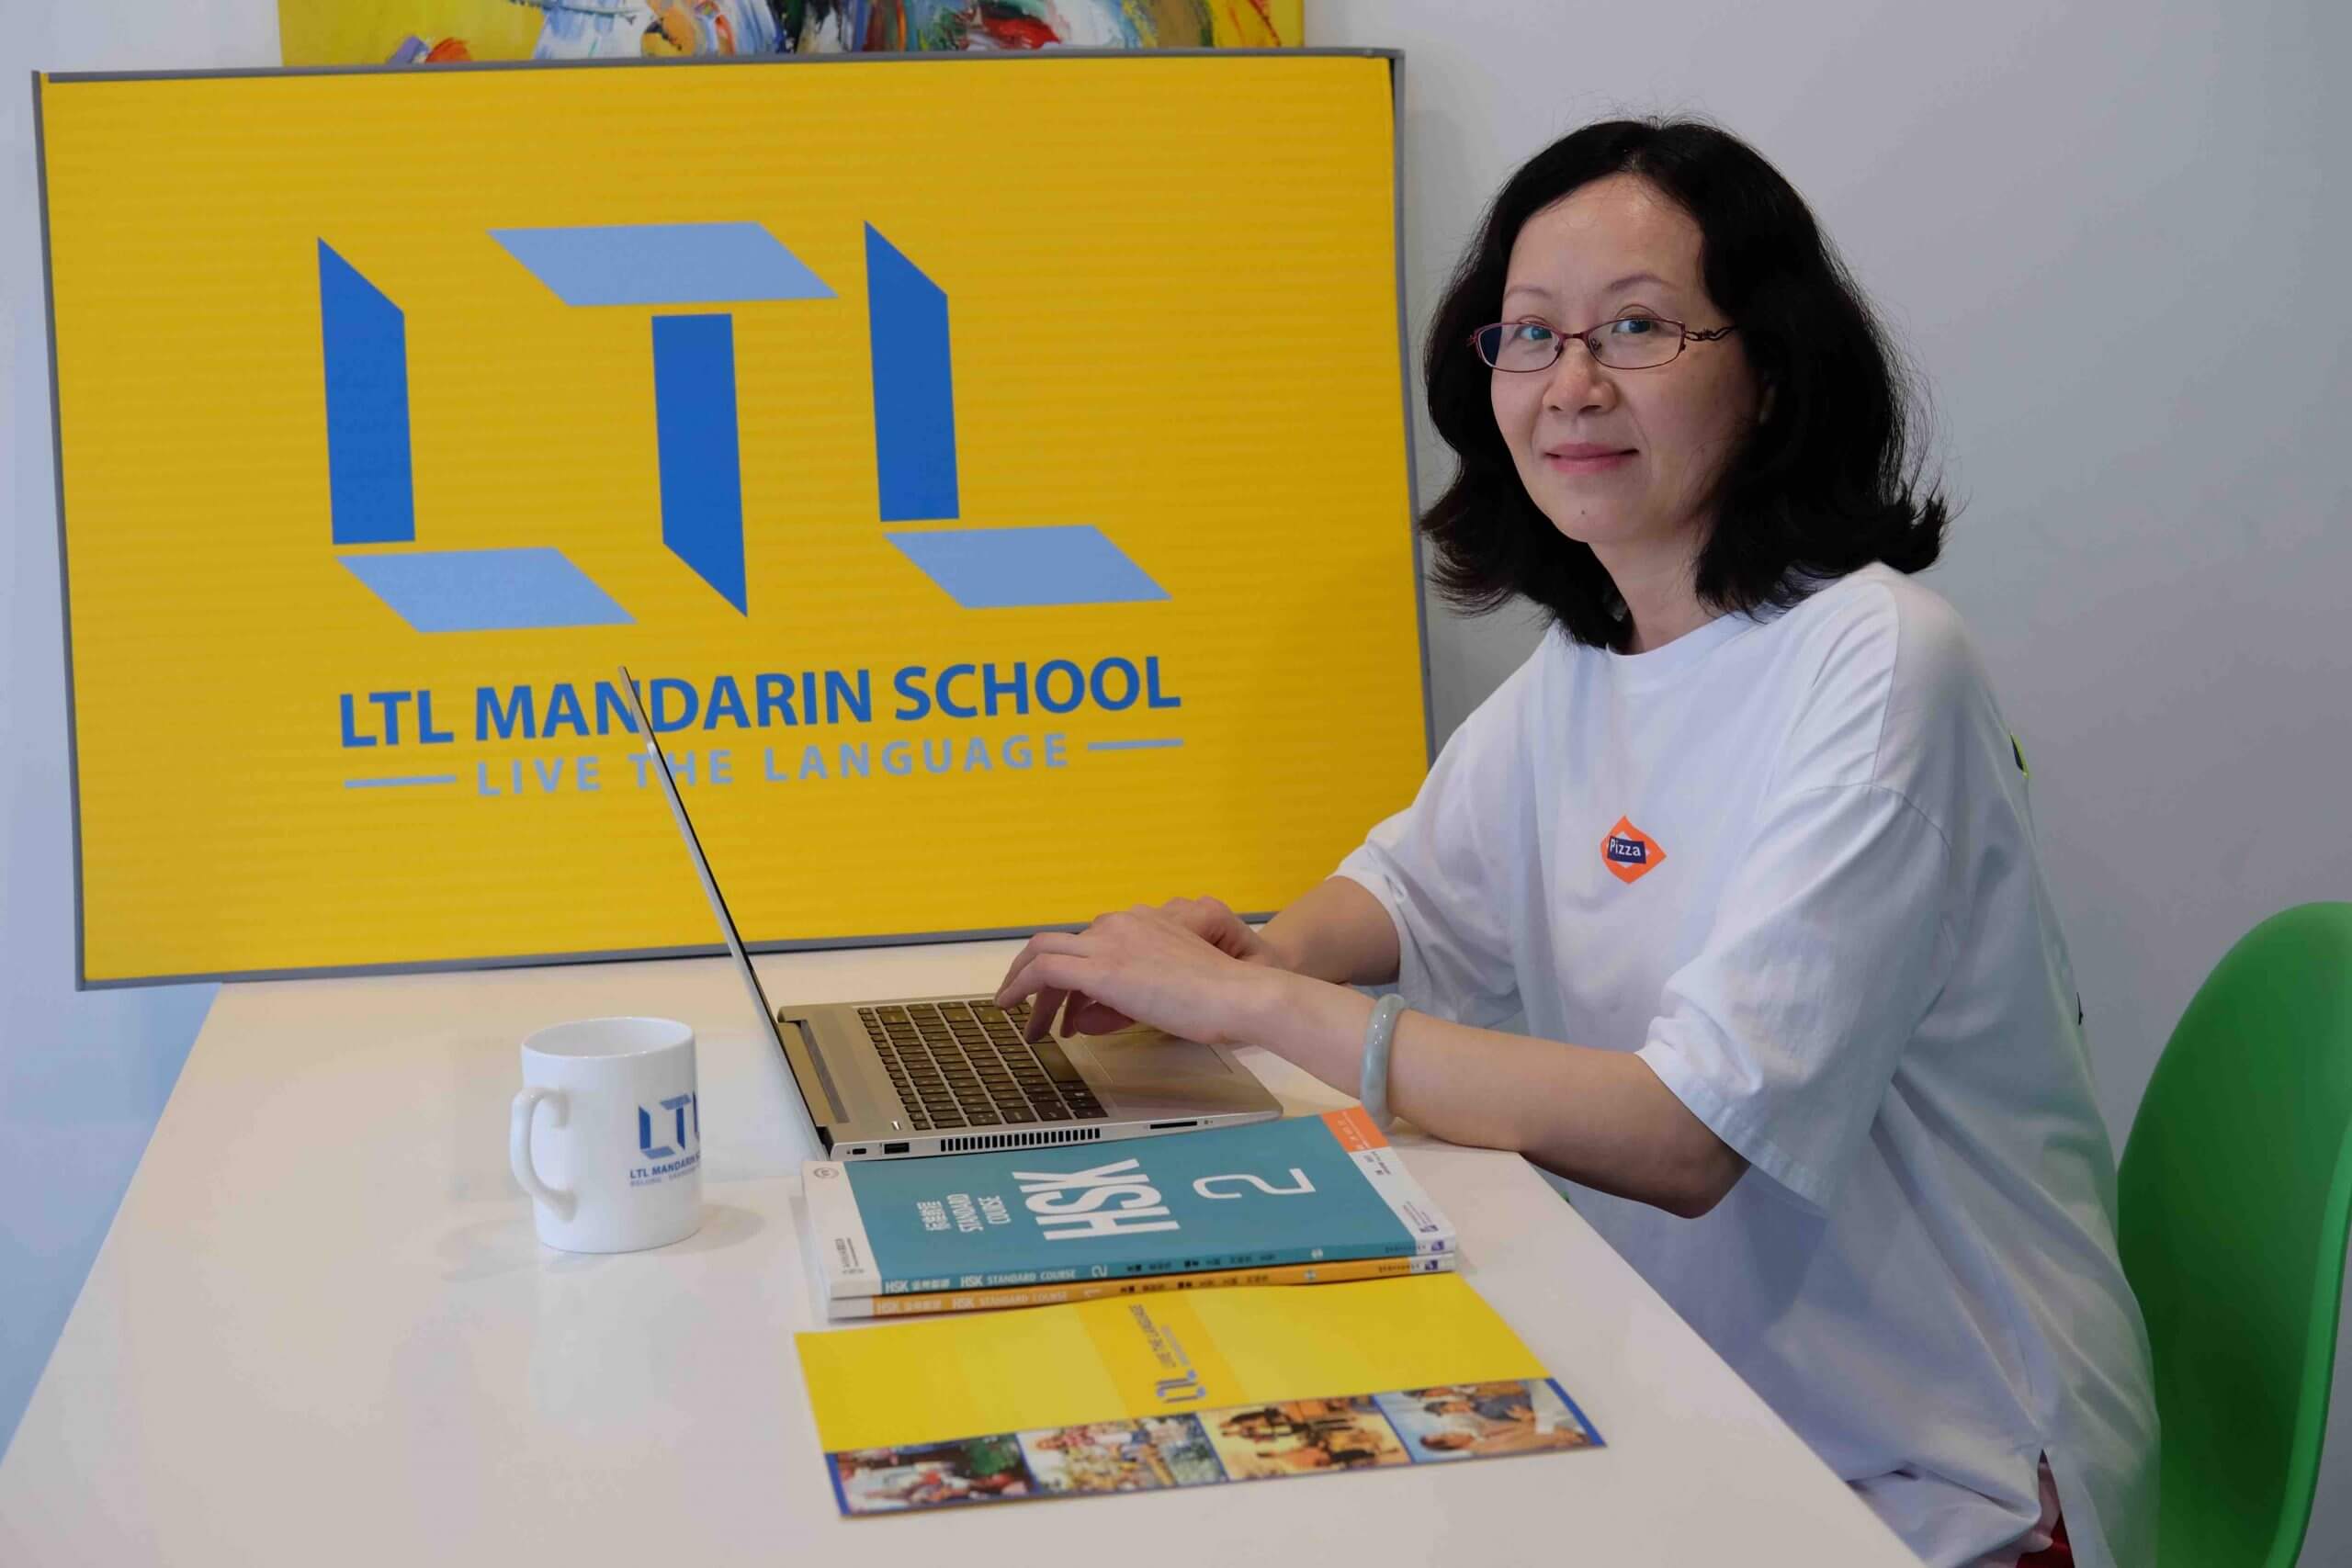 LTL Mandarin School Team